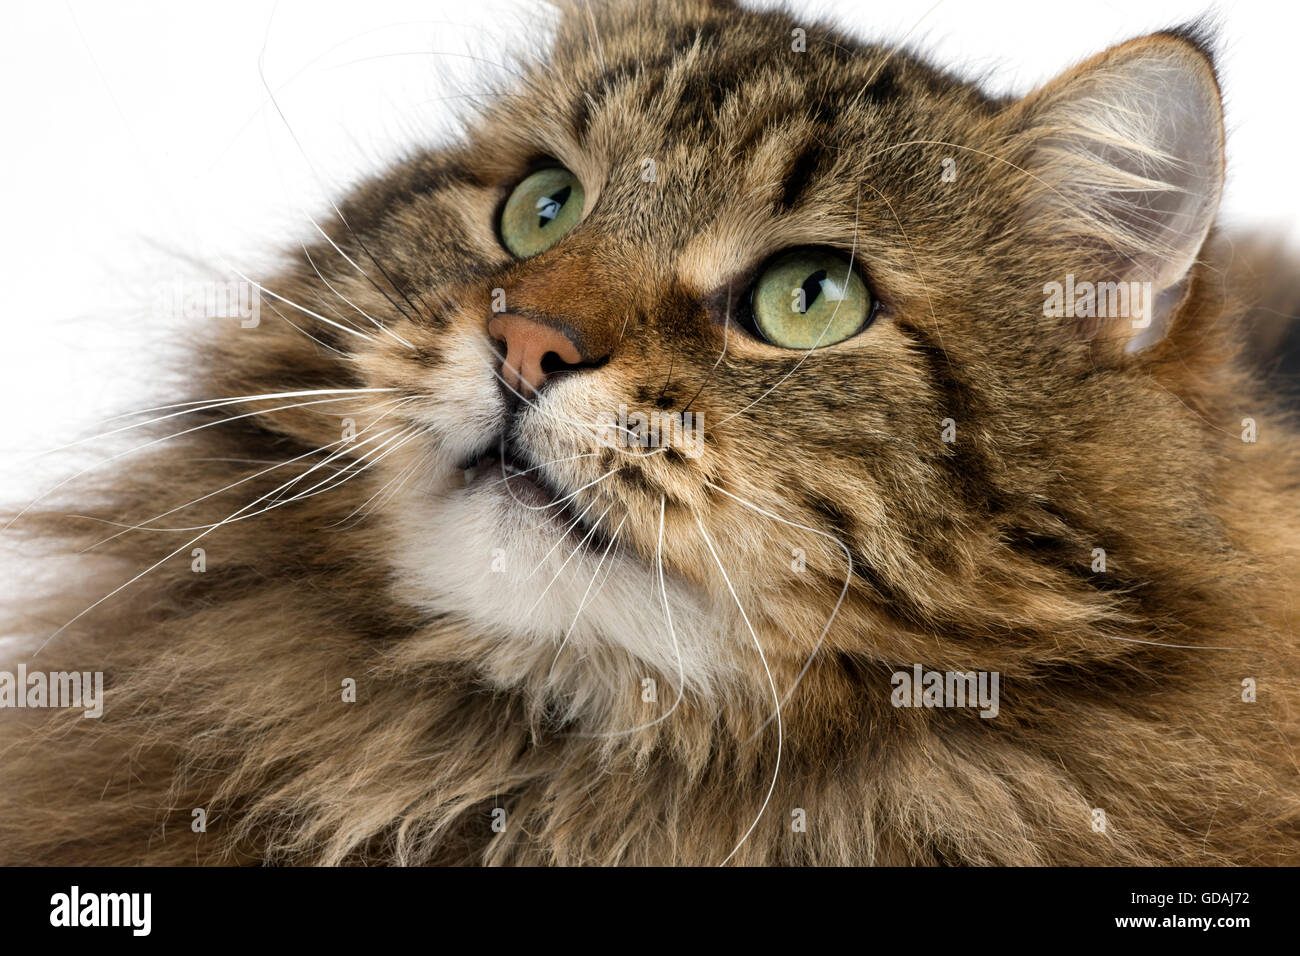 ANGORA DOMESTIC CAT, PORTRAIT OF MALE Stock Photo